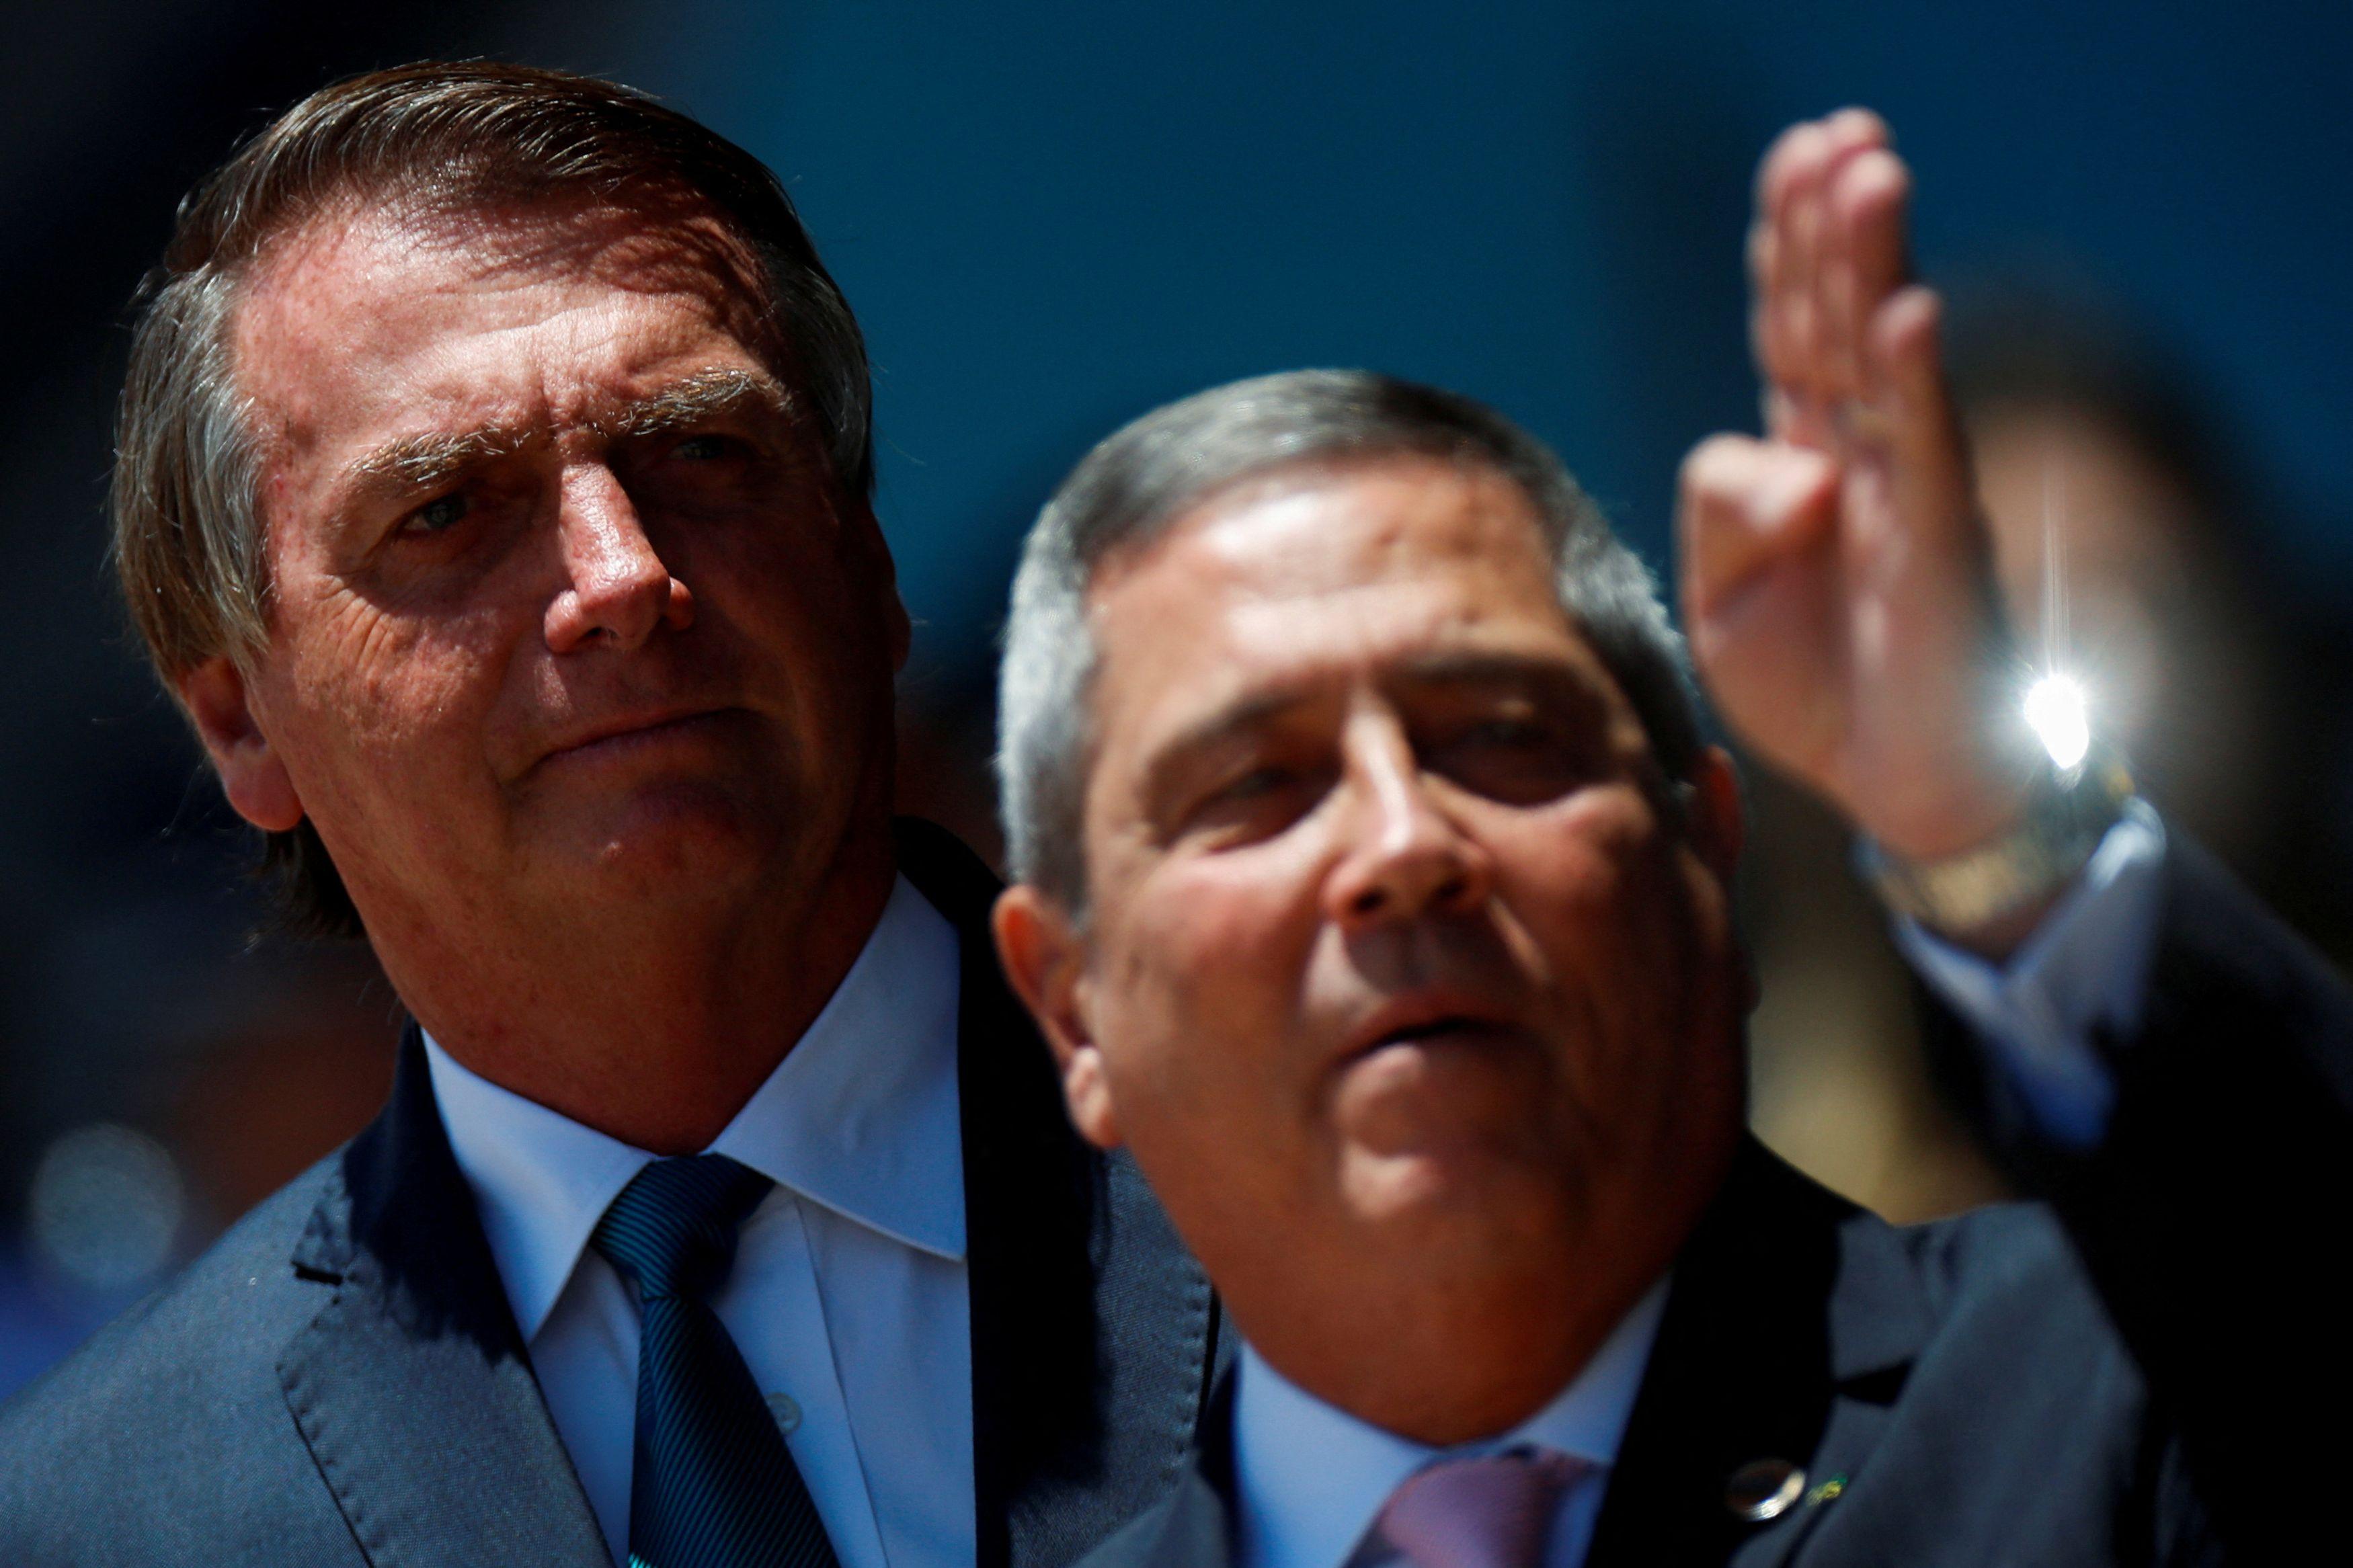 O presidente Jair Bolsonaro (PL) e seu provável vice, Walter Braga Netto. Foto: Adriano Machado/Reuters